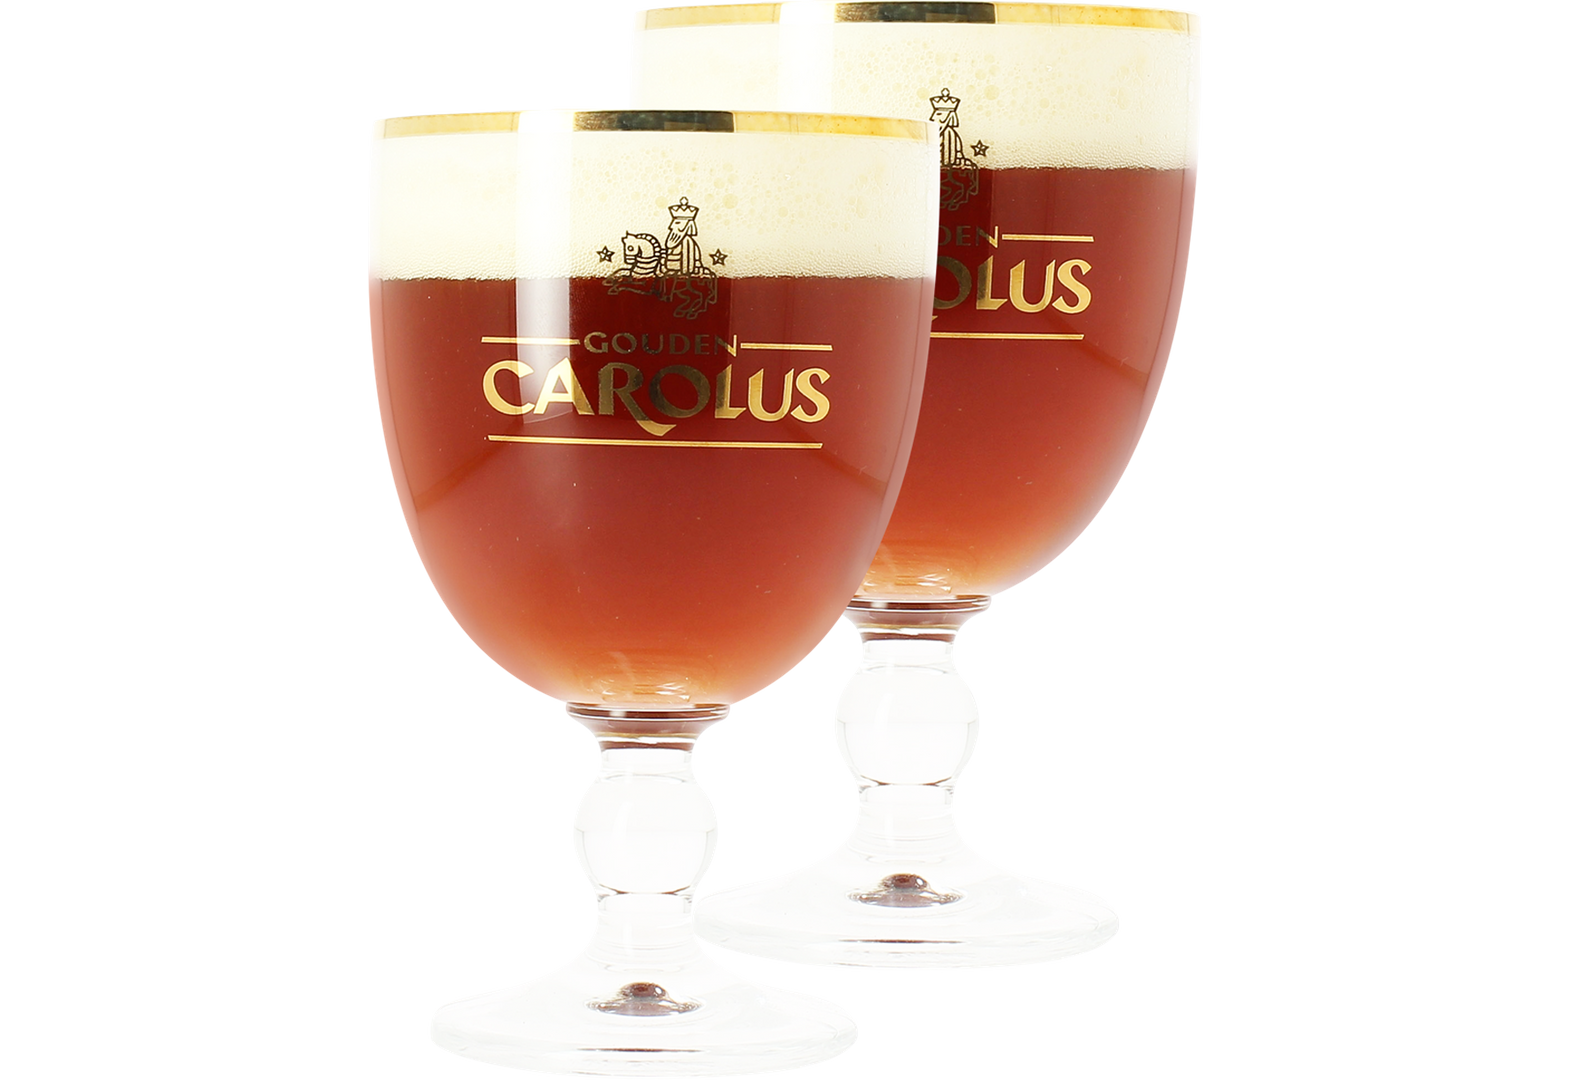 2 Gouden Carolus glasses